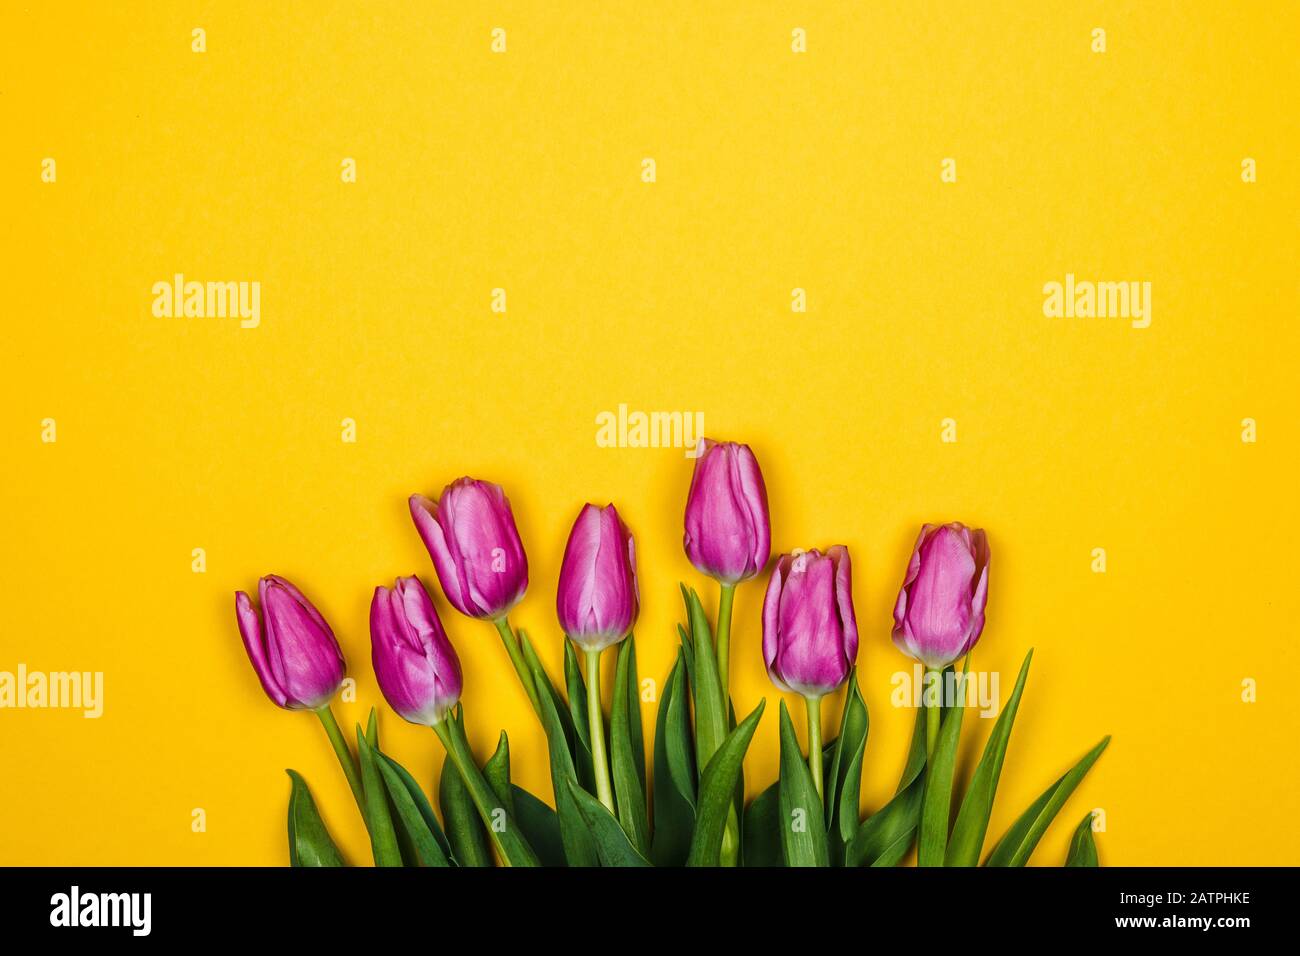 Rosa viola i tulipani su sfondo giallo. Design semplice Foto Stock